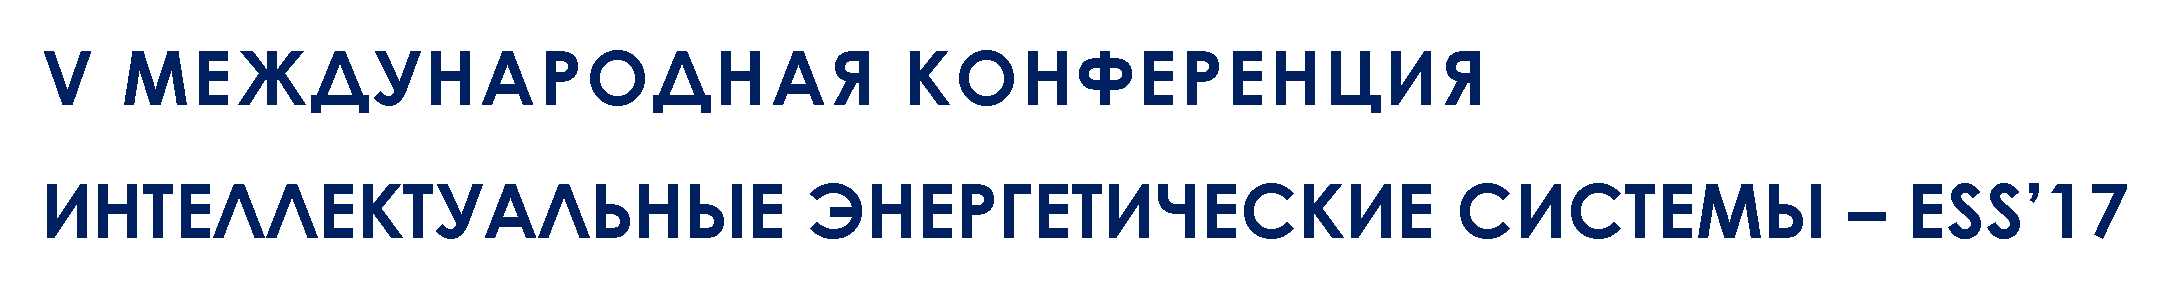 ESS'2017, 5–9 июня, 2017 г. г. Киев, Украина